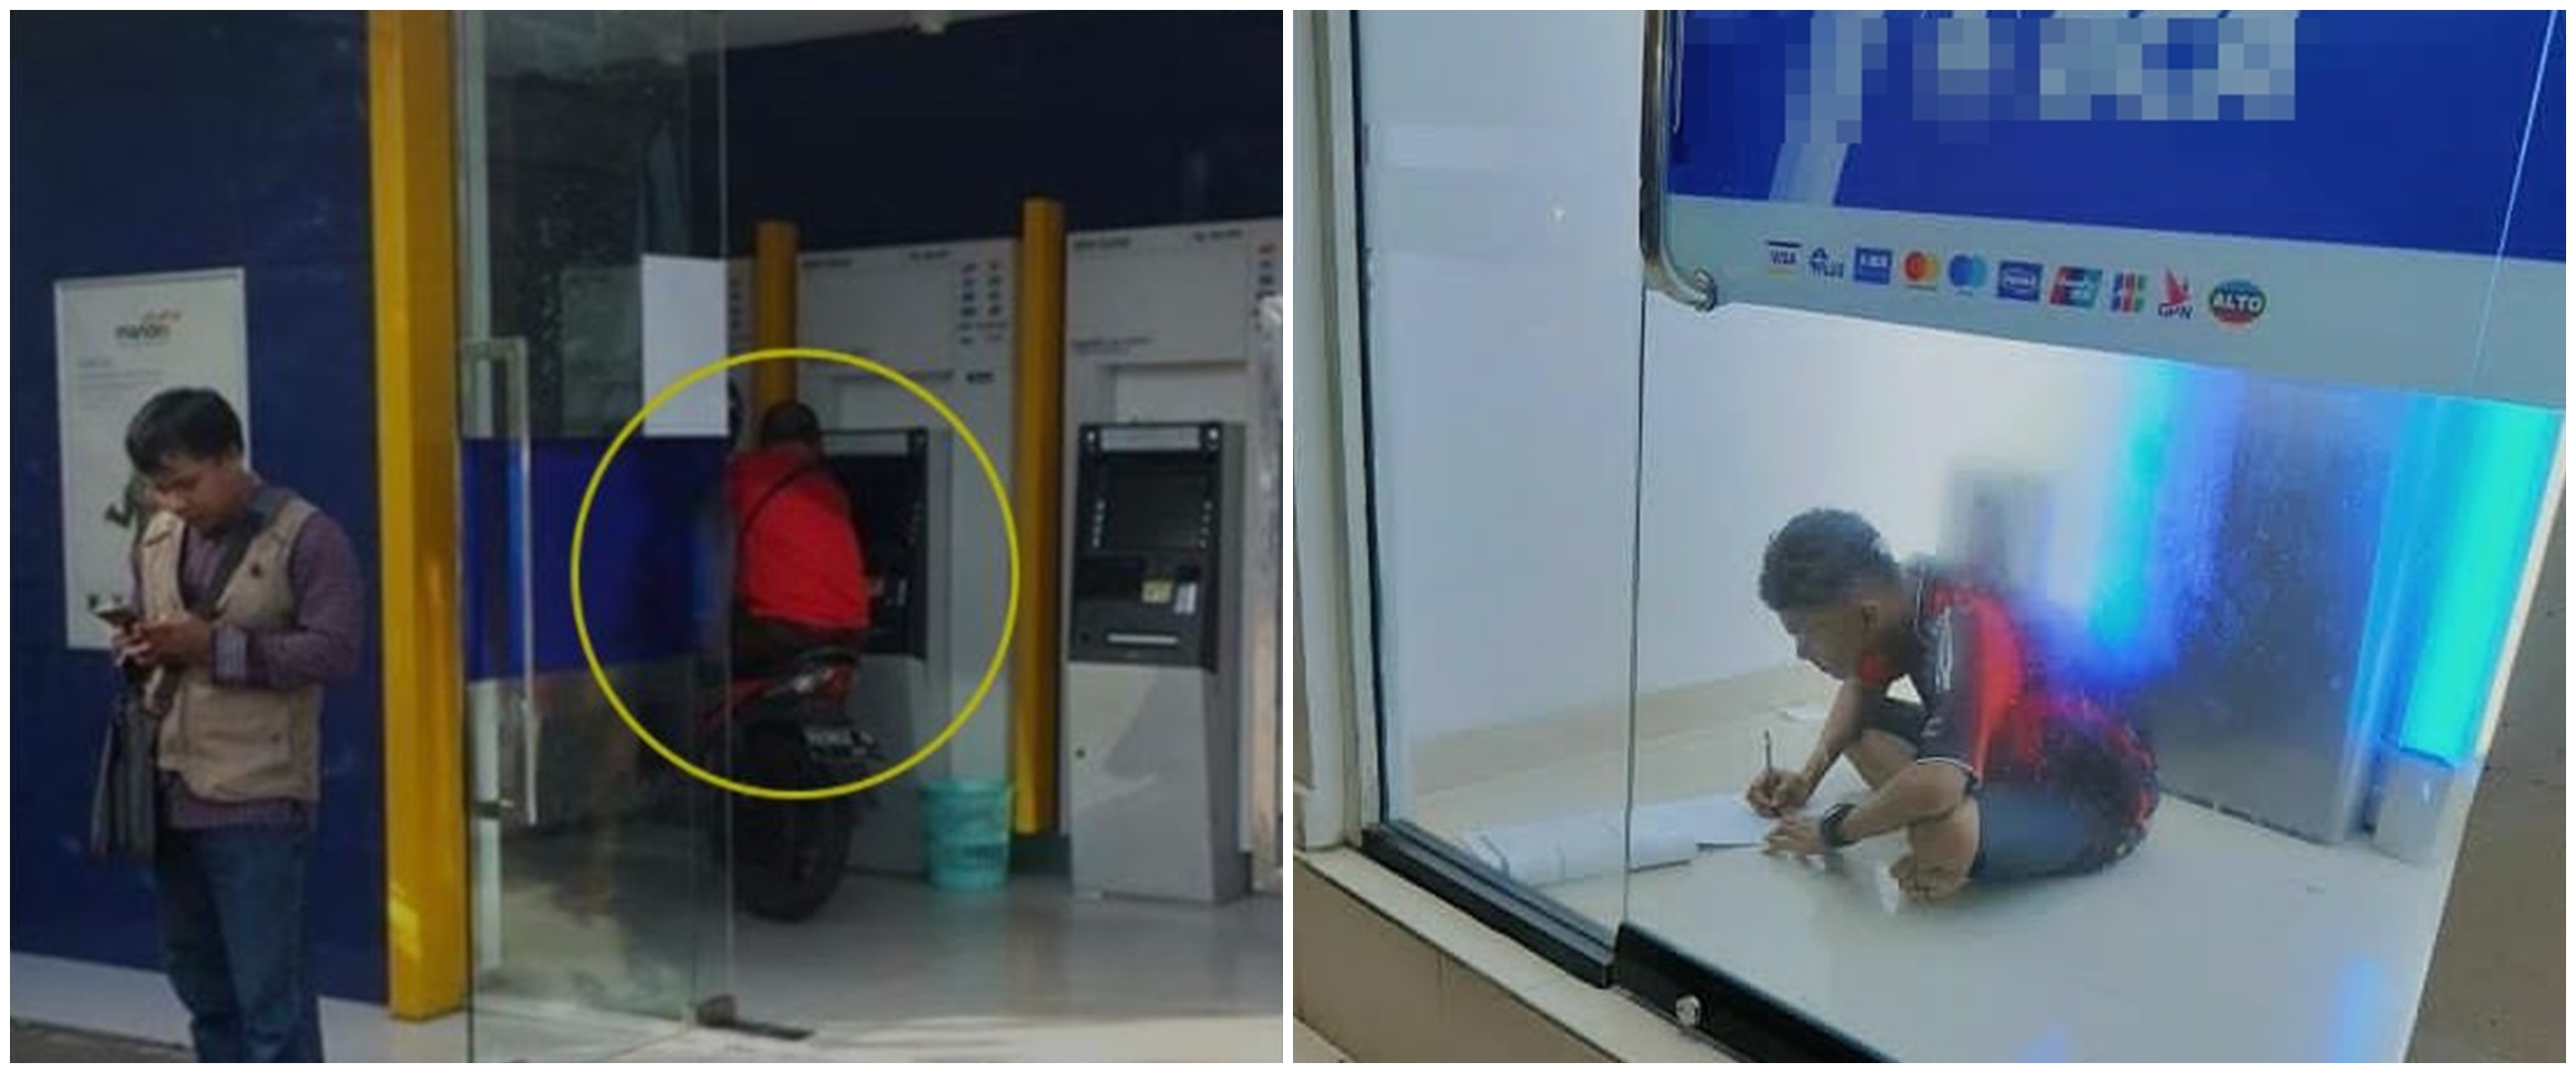 13 Kelakuan lucu orang saat di ATM ini bikin ngakak, absurd abis